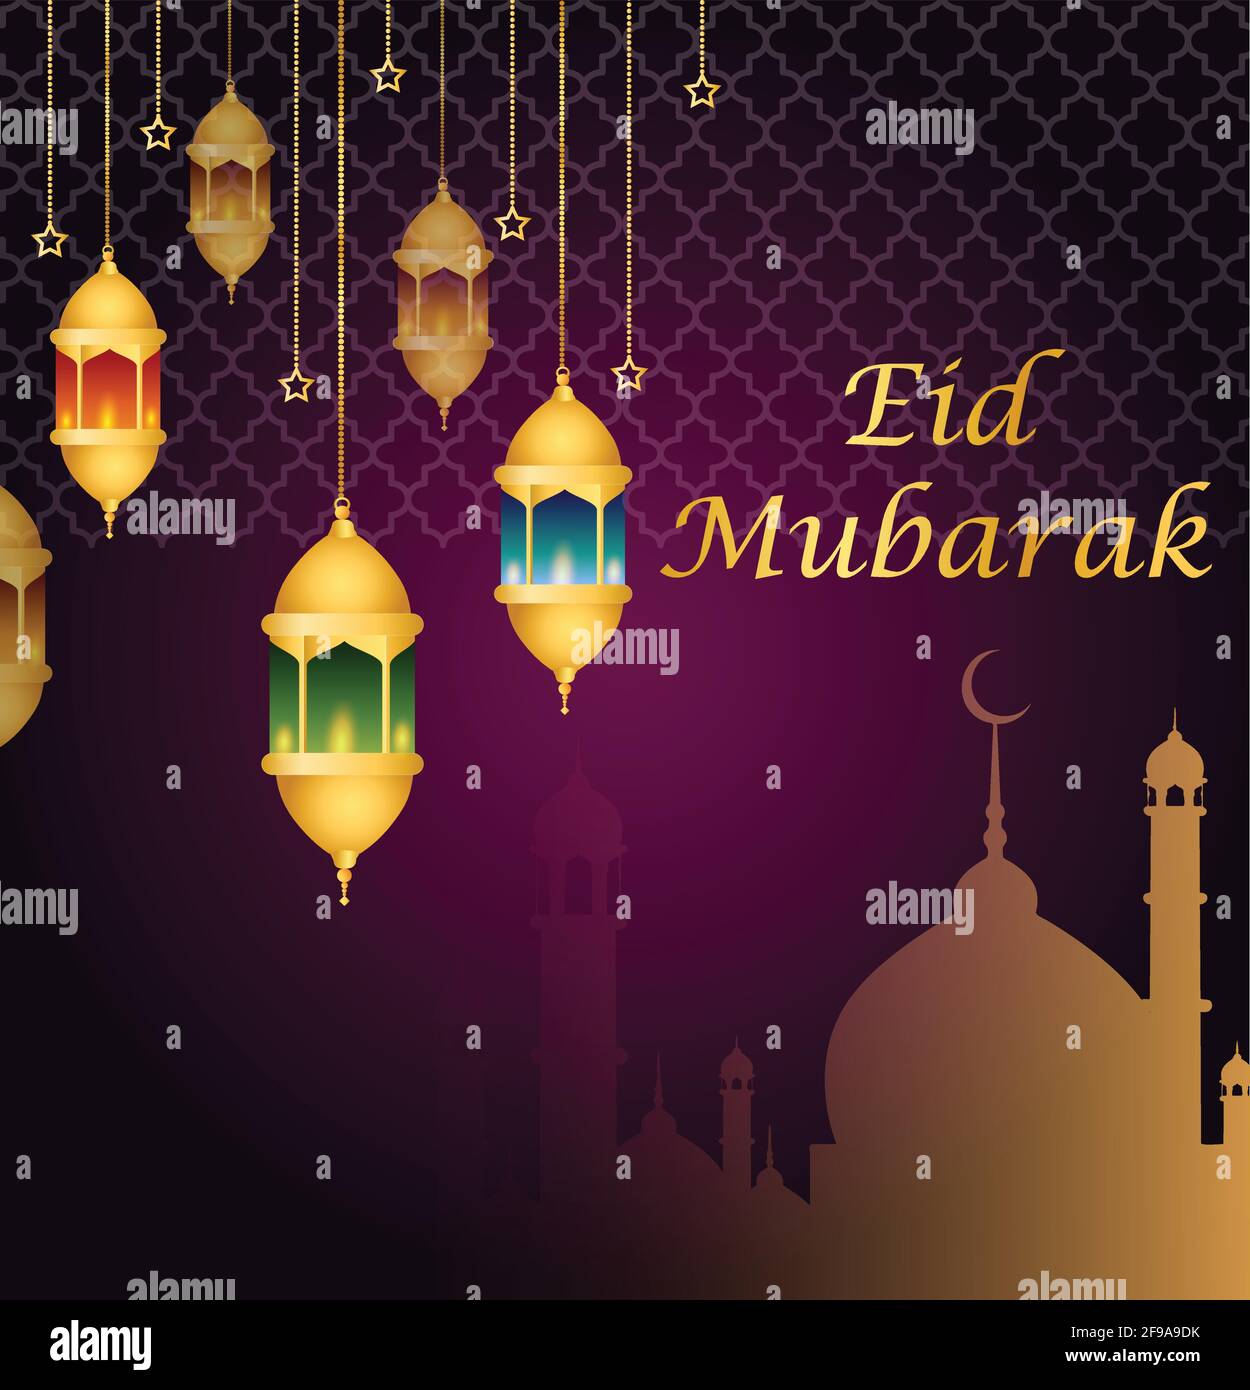 Eid Mubarak: Chúc mừng Eid Mubarak! Đây là dịp lễ hội quan trọng của người Hồi giáo thông qua nhiều hoạt động, từ trang trí nhà cửa đến mua sắm đồ ăn và quà tặng cho nhau. Hình ảnh kỹ thuật số của Eid Mubarak sẽ khiến bạn hạnh phúc và cảm thấy rộn ràng trong tâm trạng lễ hội. 